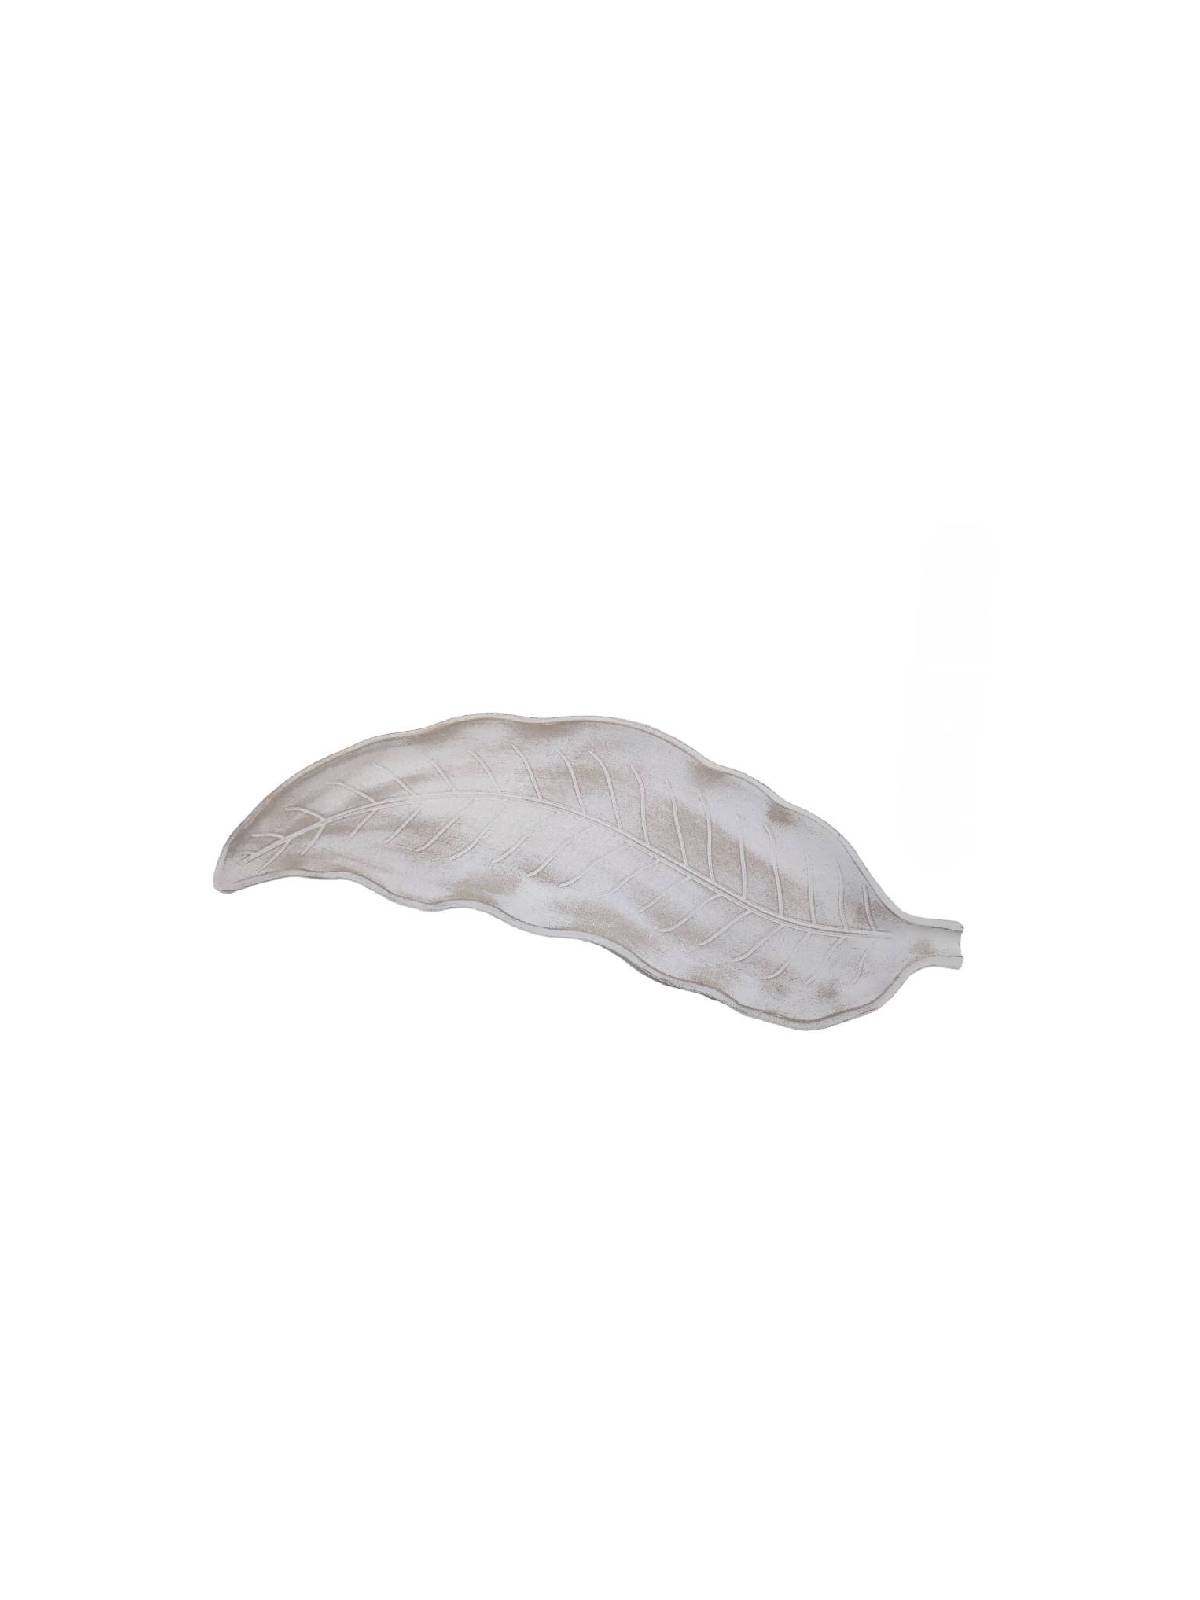 Πιατέλλα διακοσμητική φύλλο λευκή αντικέ